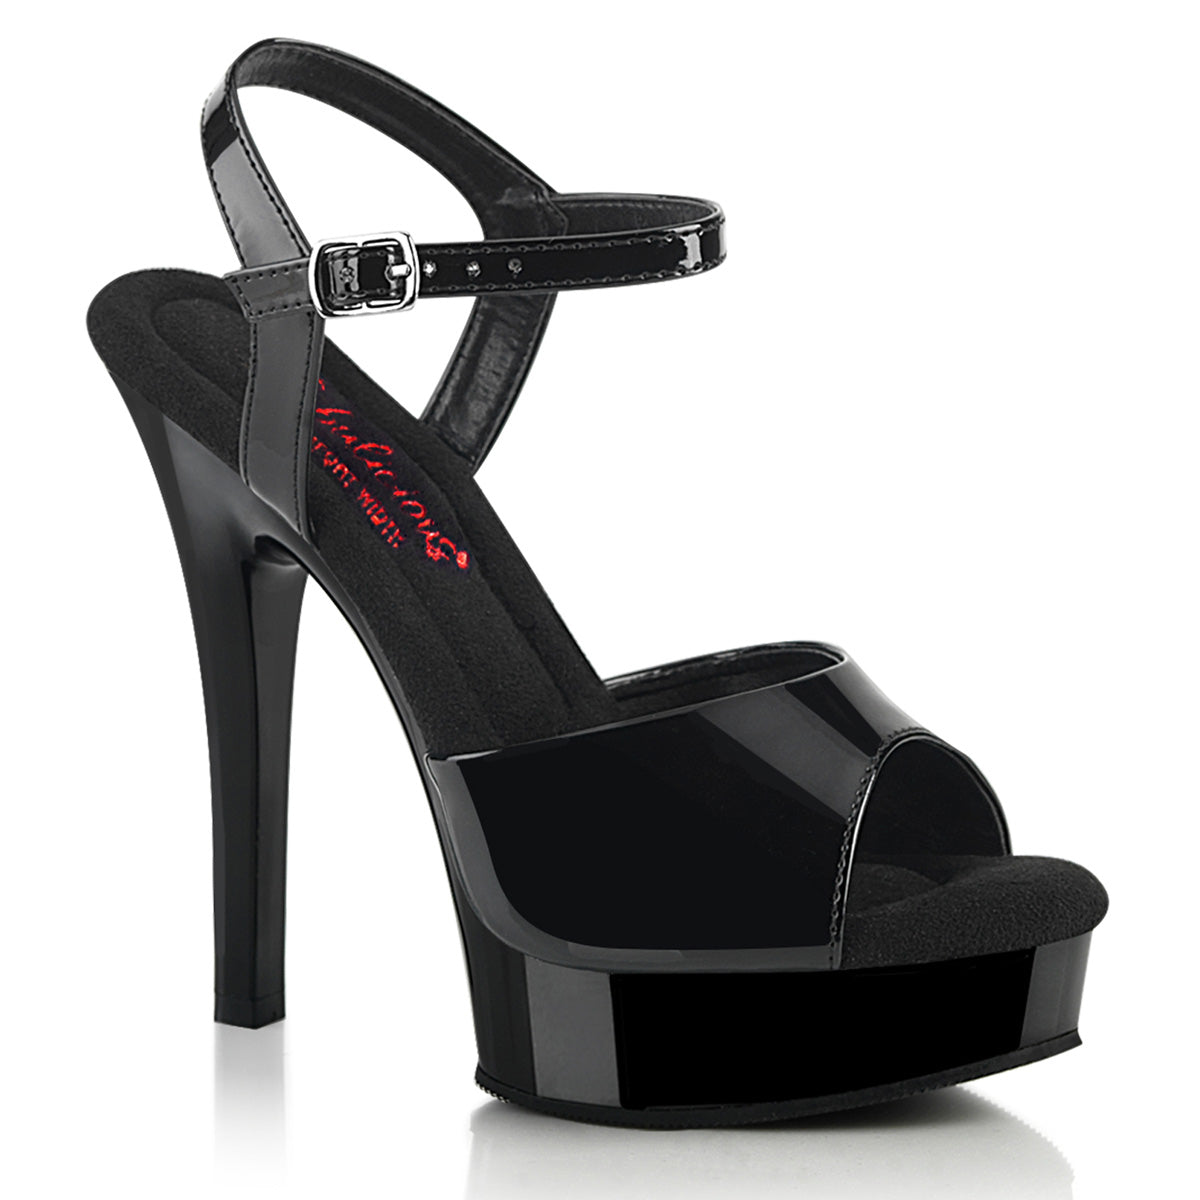 5 Inch (132mm) Heel, 7/8 Inch (25mm) Black Platform Comfort Width Ankle Strap Sandal